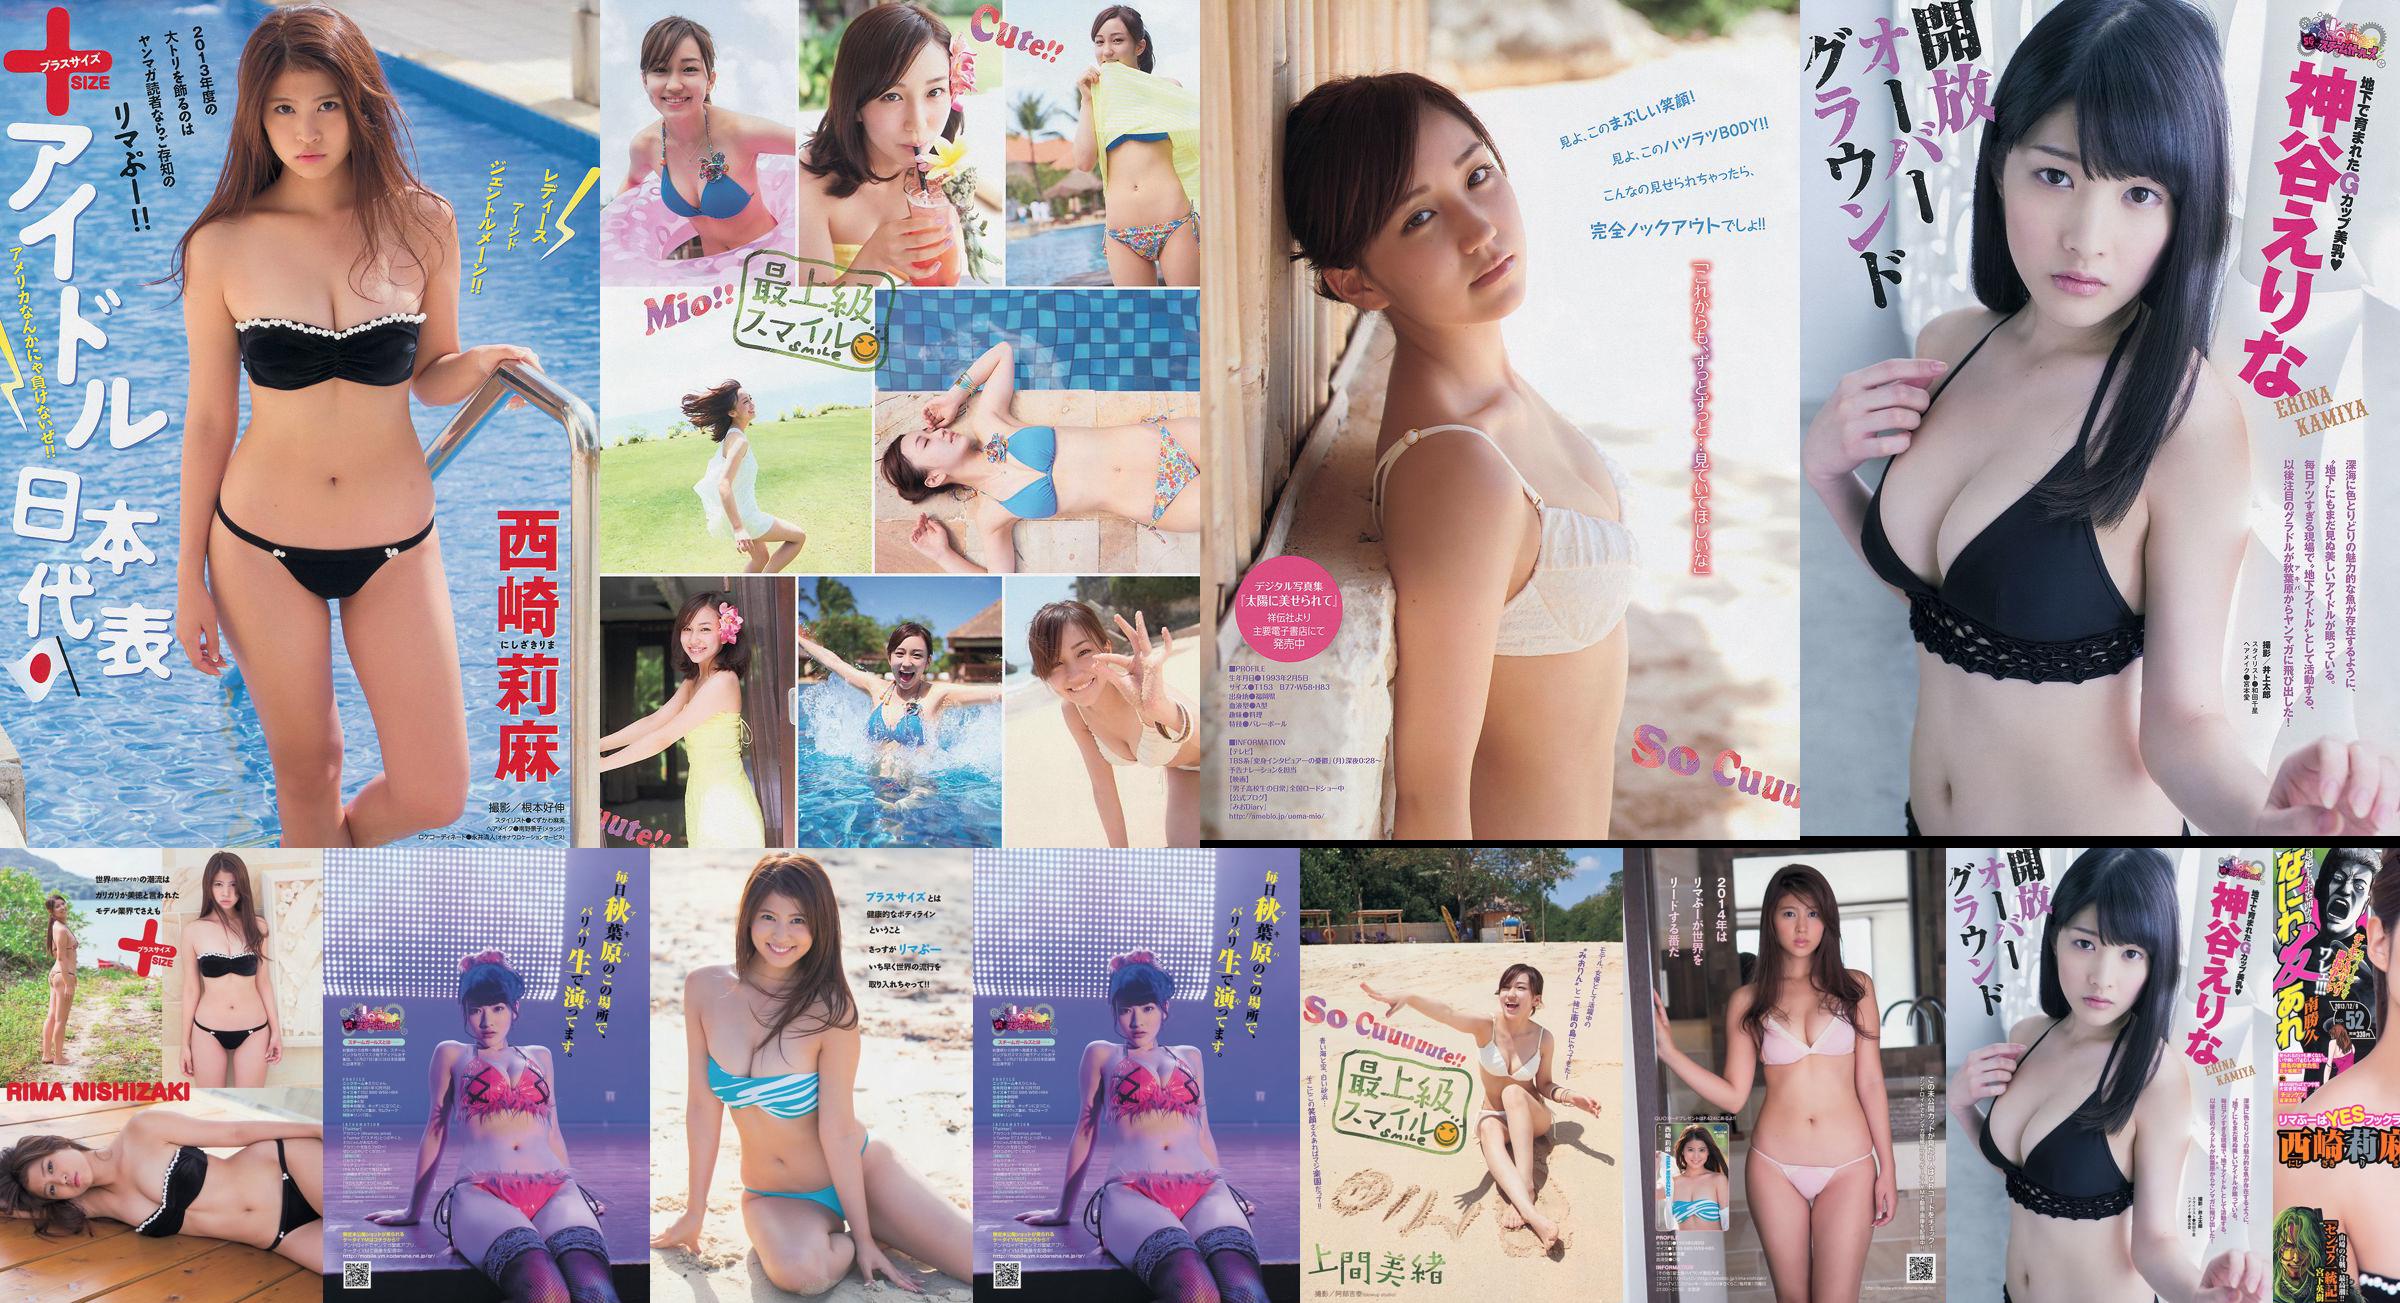 [Young Magazine] Rima Nishizaki Mio Uema Erina Kamiya 2013 No.52 Photo Moshi No.e476b0 Page 1